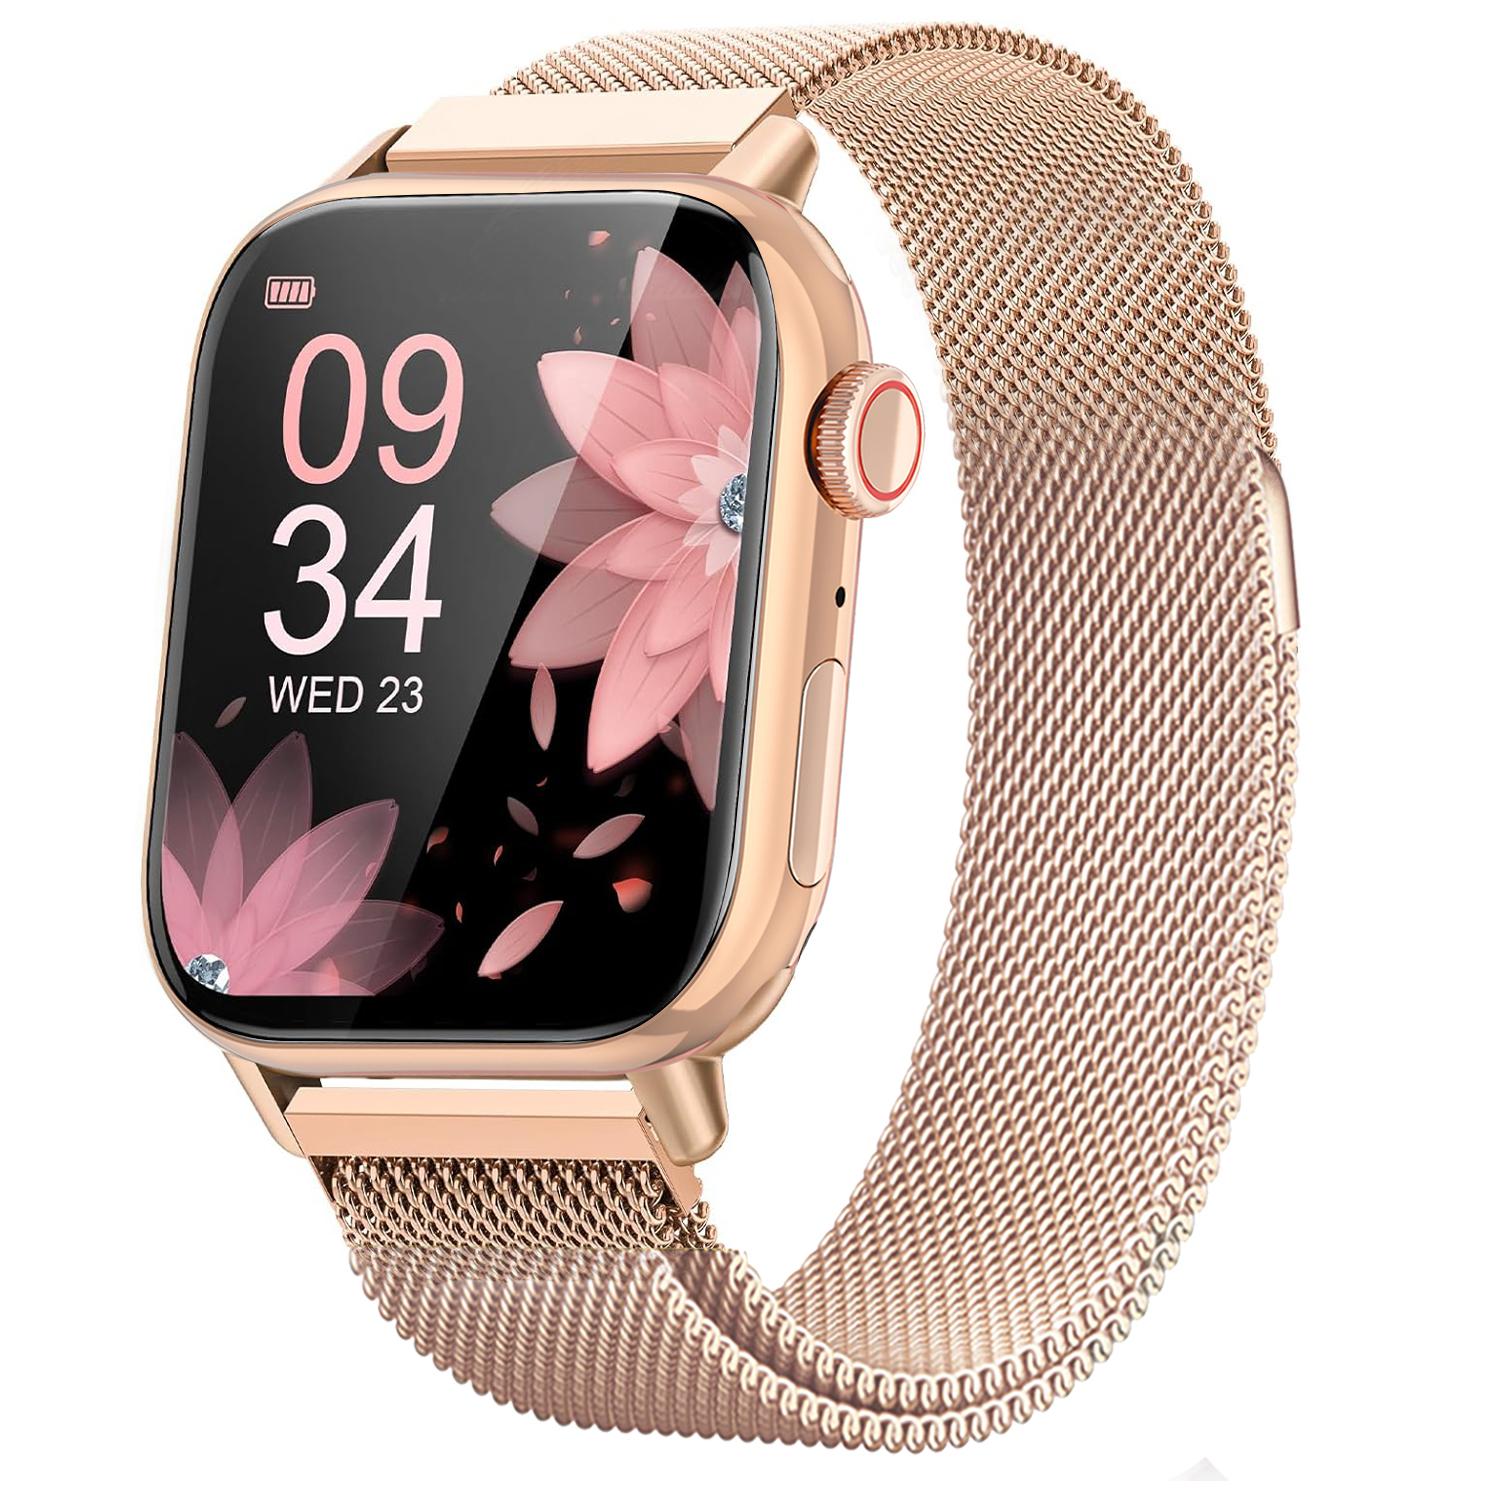  Amazfit Bip 3 - Reloj inteligente para mujer, rastreador de  salud y fitness con pantalla a color grande de 1.69 pulgadas, duración de  la batería de 14 días, más de 60